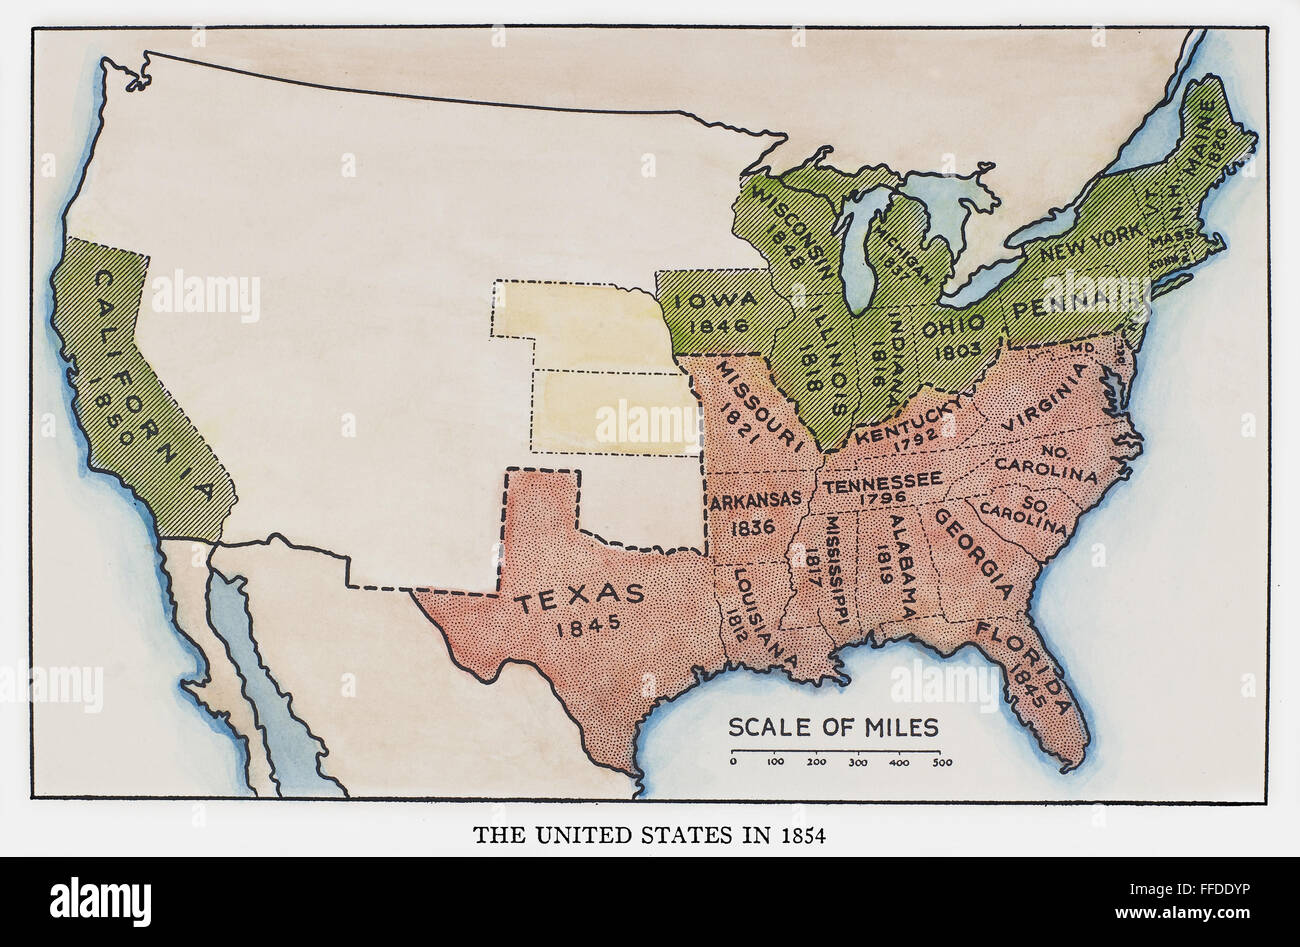 Mappa DEGLI STATI UNITI, 1854. /NMap degli Stati Uniti al momento dell'Kansas-Nebraska Act del 1854, che mostra stati schiavisti (rosso), Stati liberi (verde), e i futuri Stati membri del Kansas e Nebraska (giallo). Foto Stock